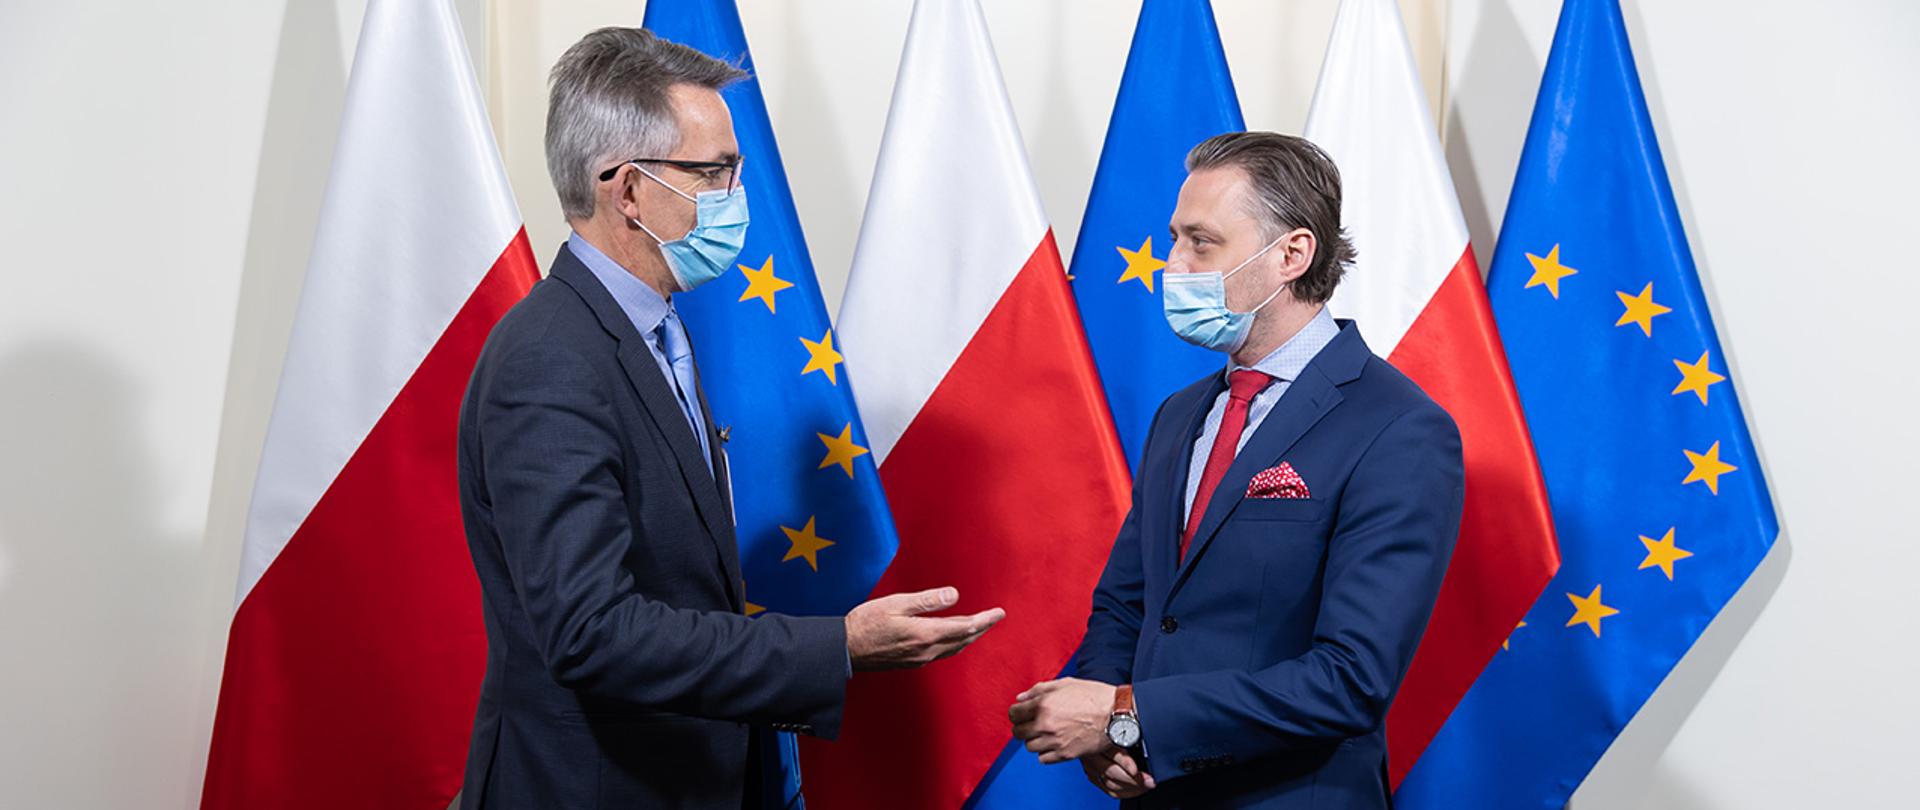 Na zdjęciu widać wiceministra Bartosza Grodeckiego i Oliviera Onidim zastępcę dyrektora generalnego DG HOME stojących i rozmawiających na tle flag Polski i UE.